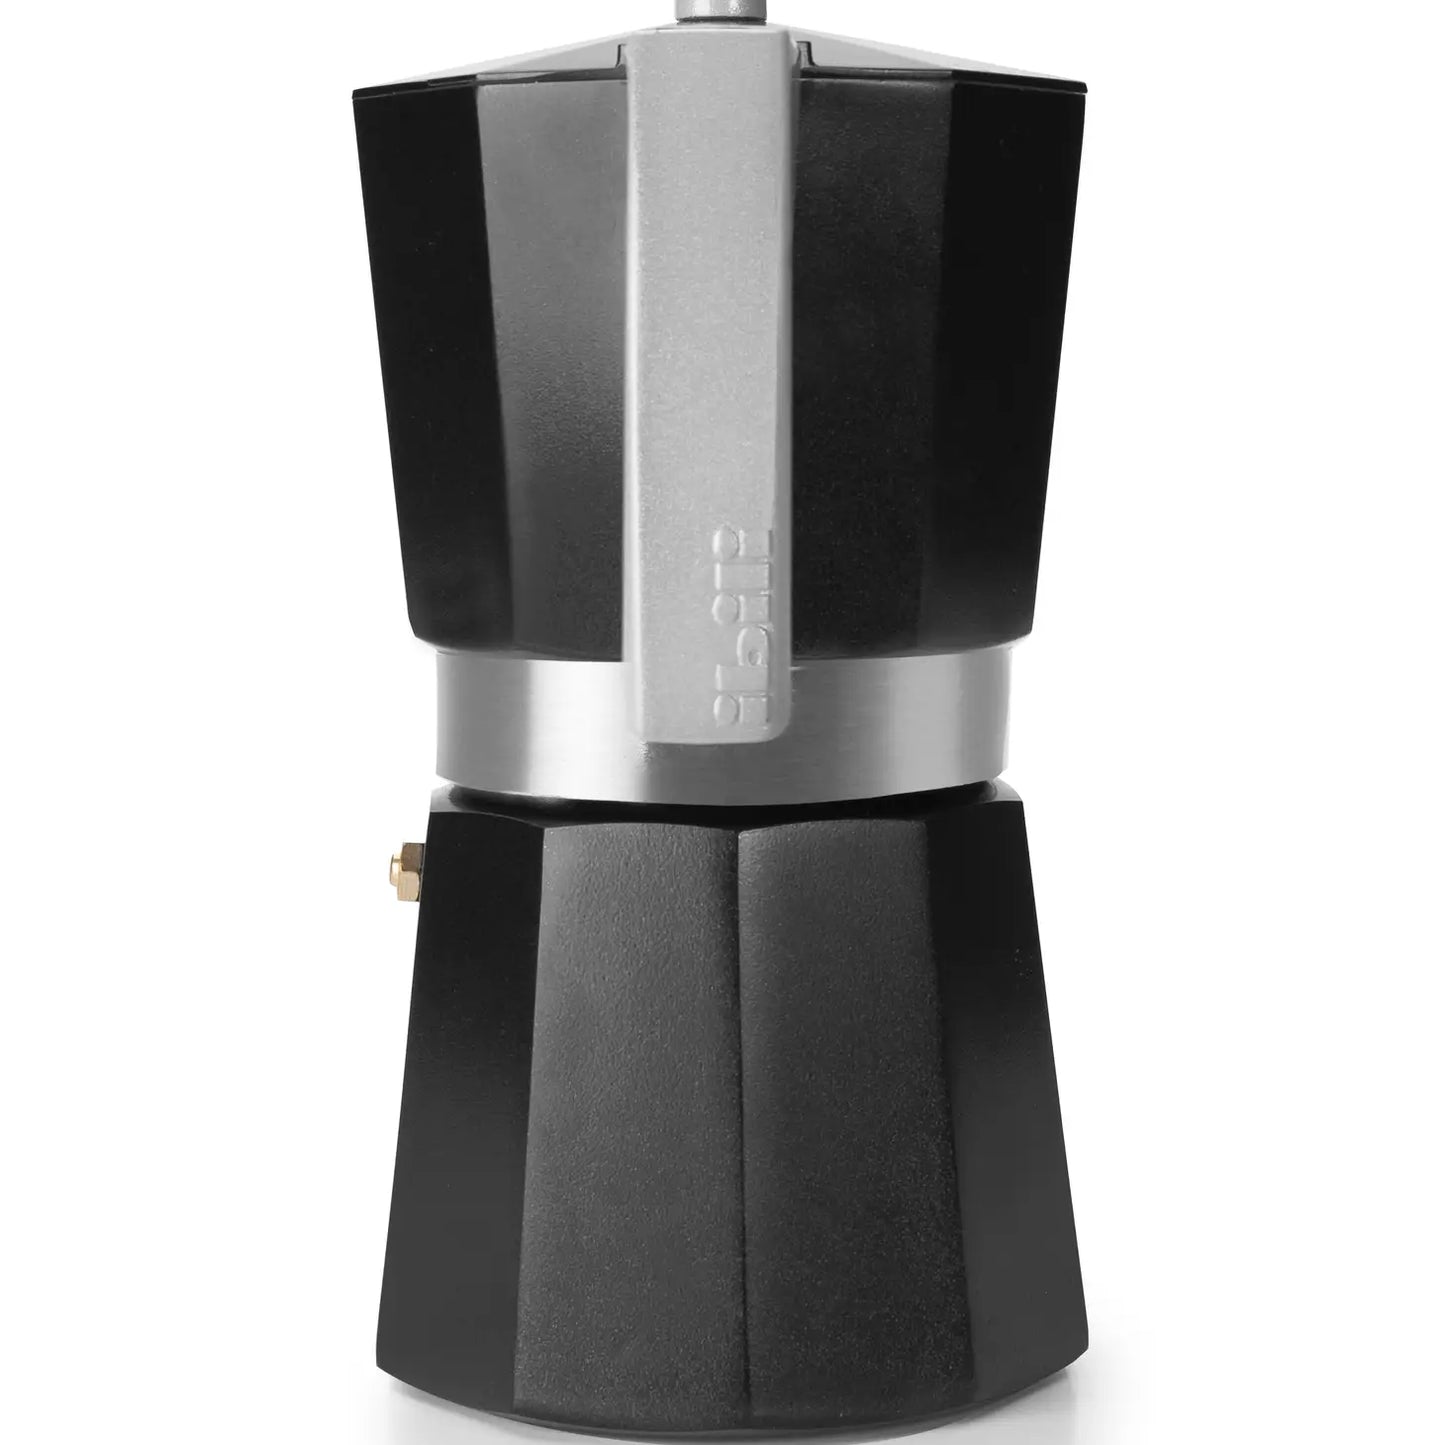 
                  
                    IBILI Evva Black Espresso Coffee Maker 6 Cups
                  
                